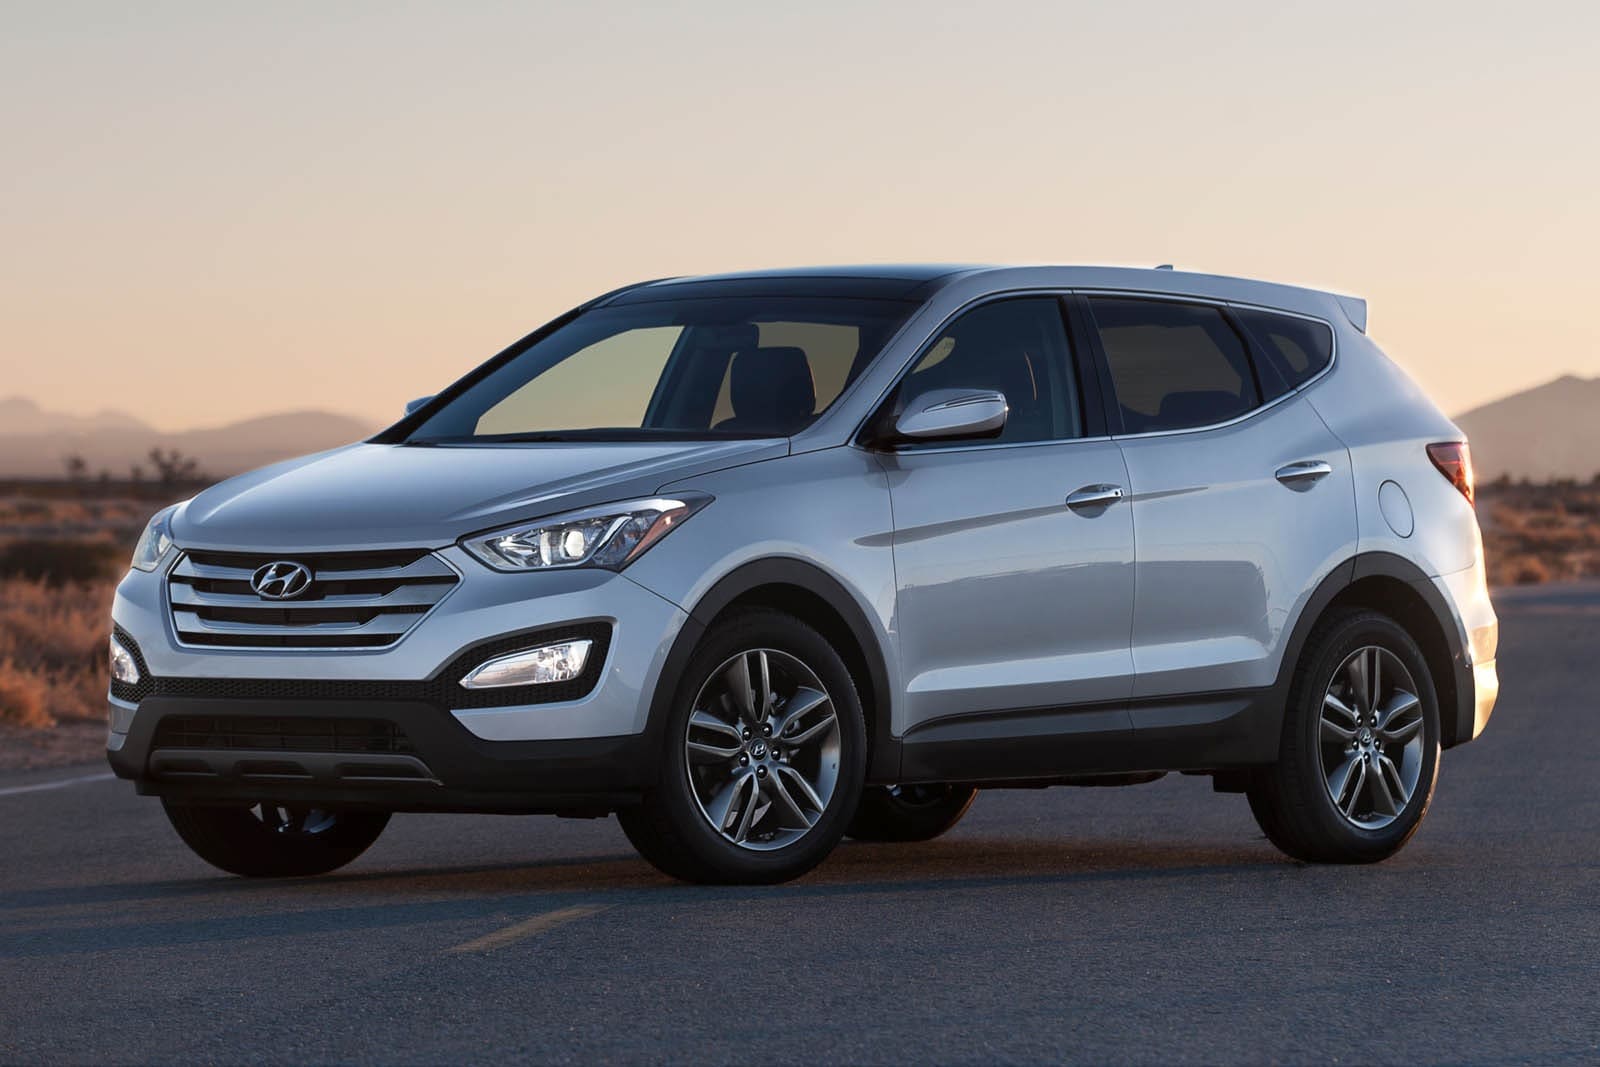 2014 Hyundai Santa Fe Sport Review & Ratings | Edmunds